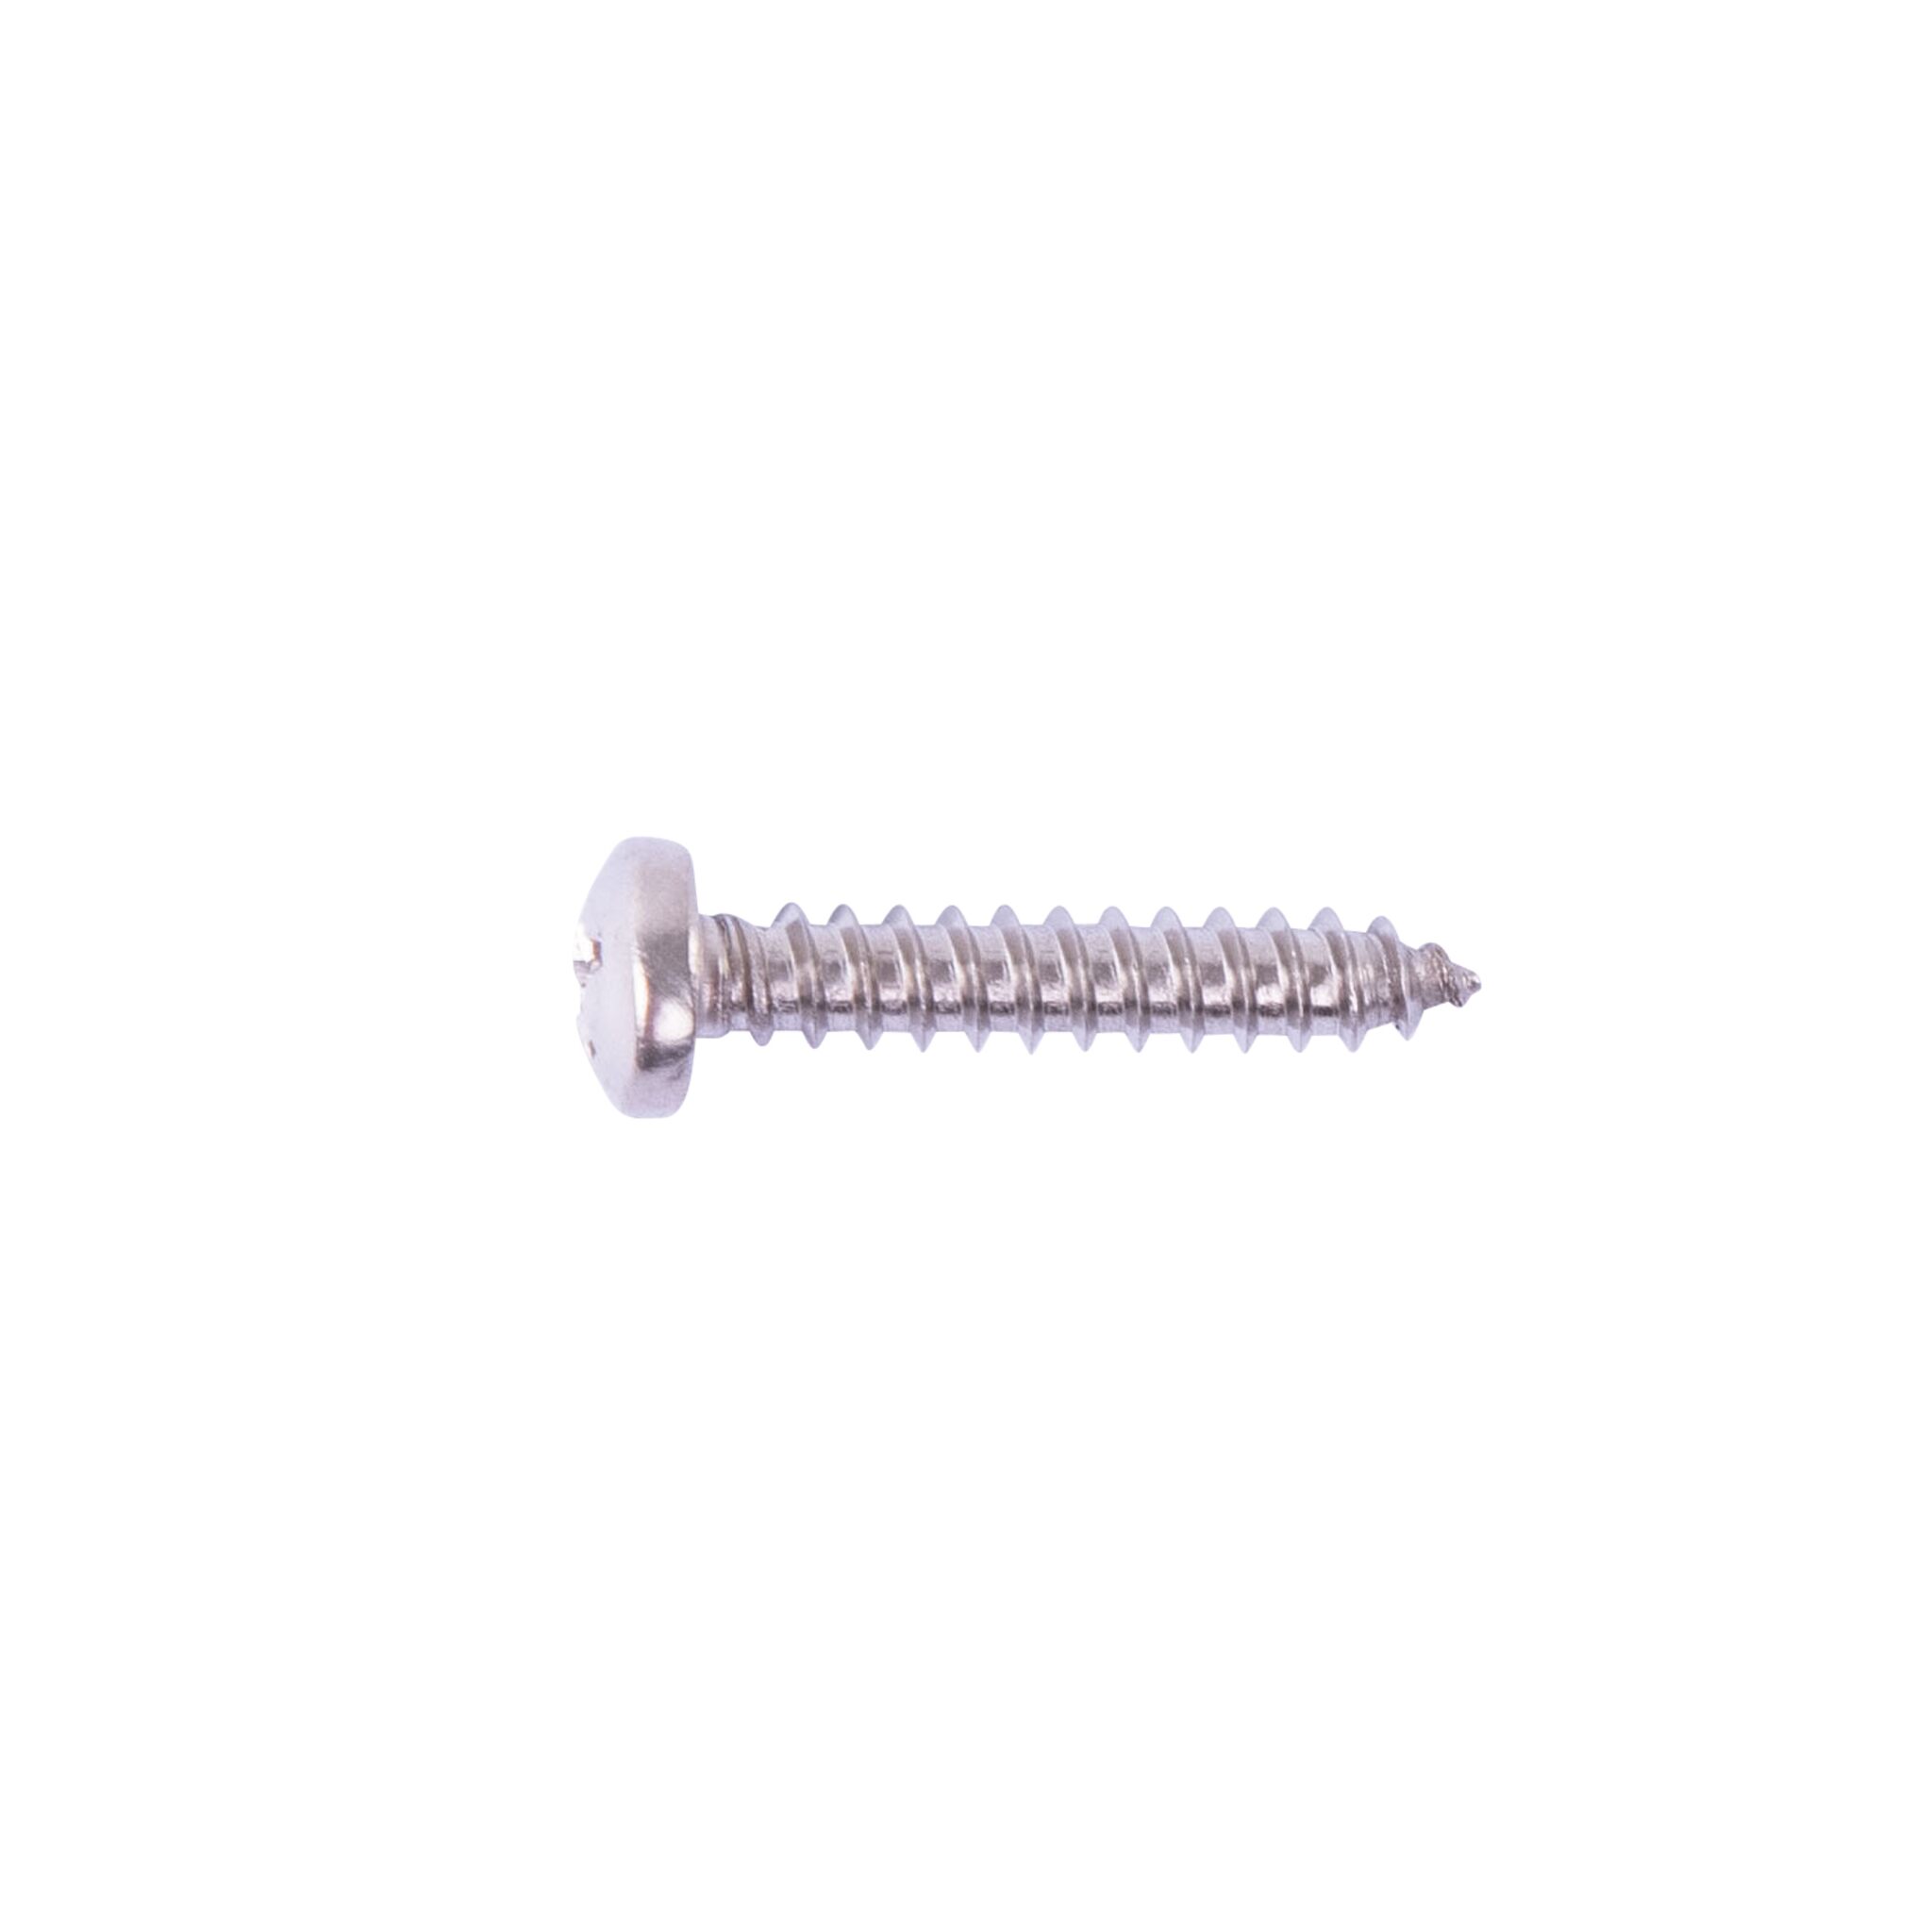 Pan head self-tapping screw (DIN 7981-A4)